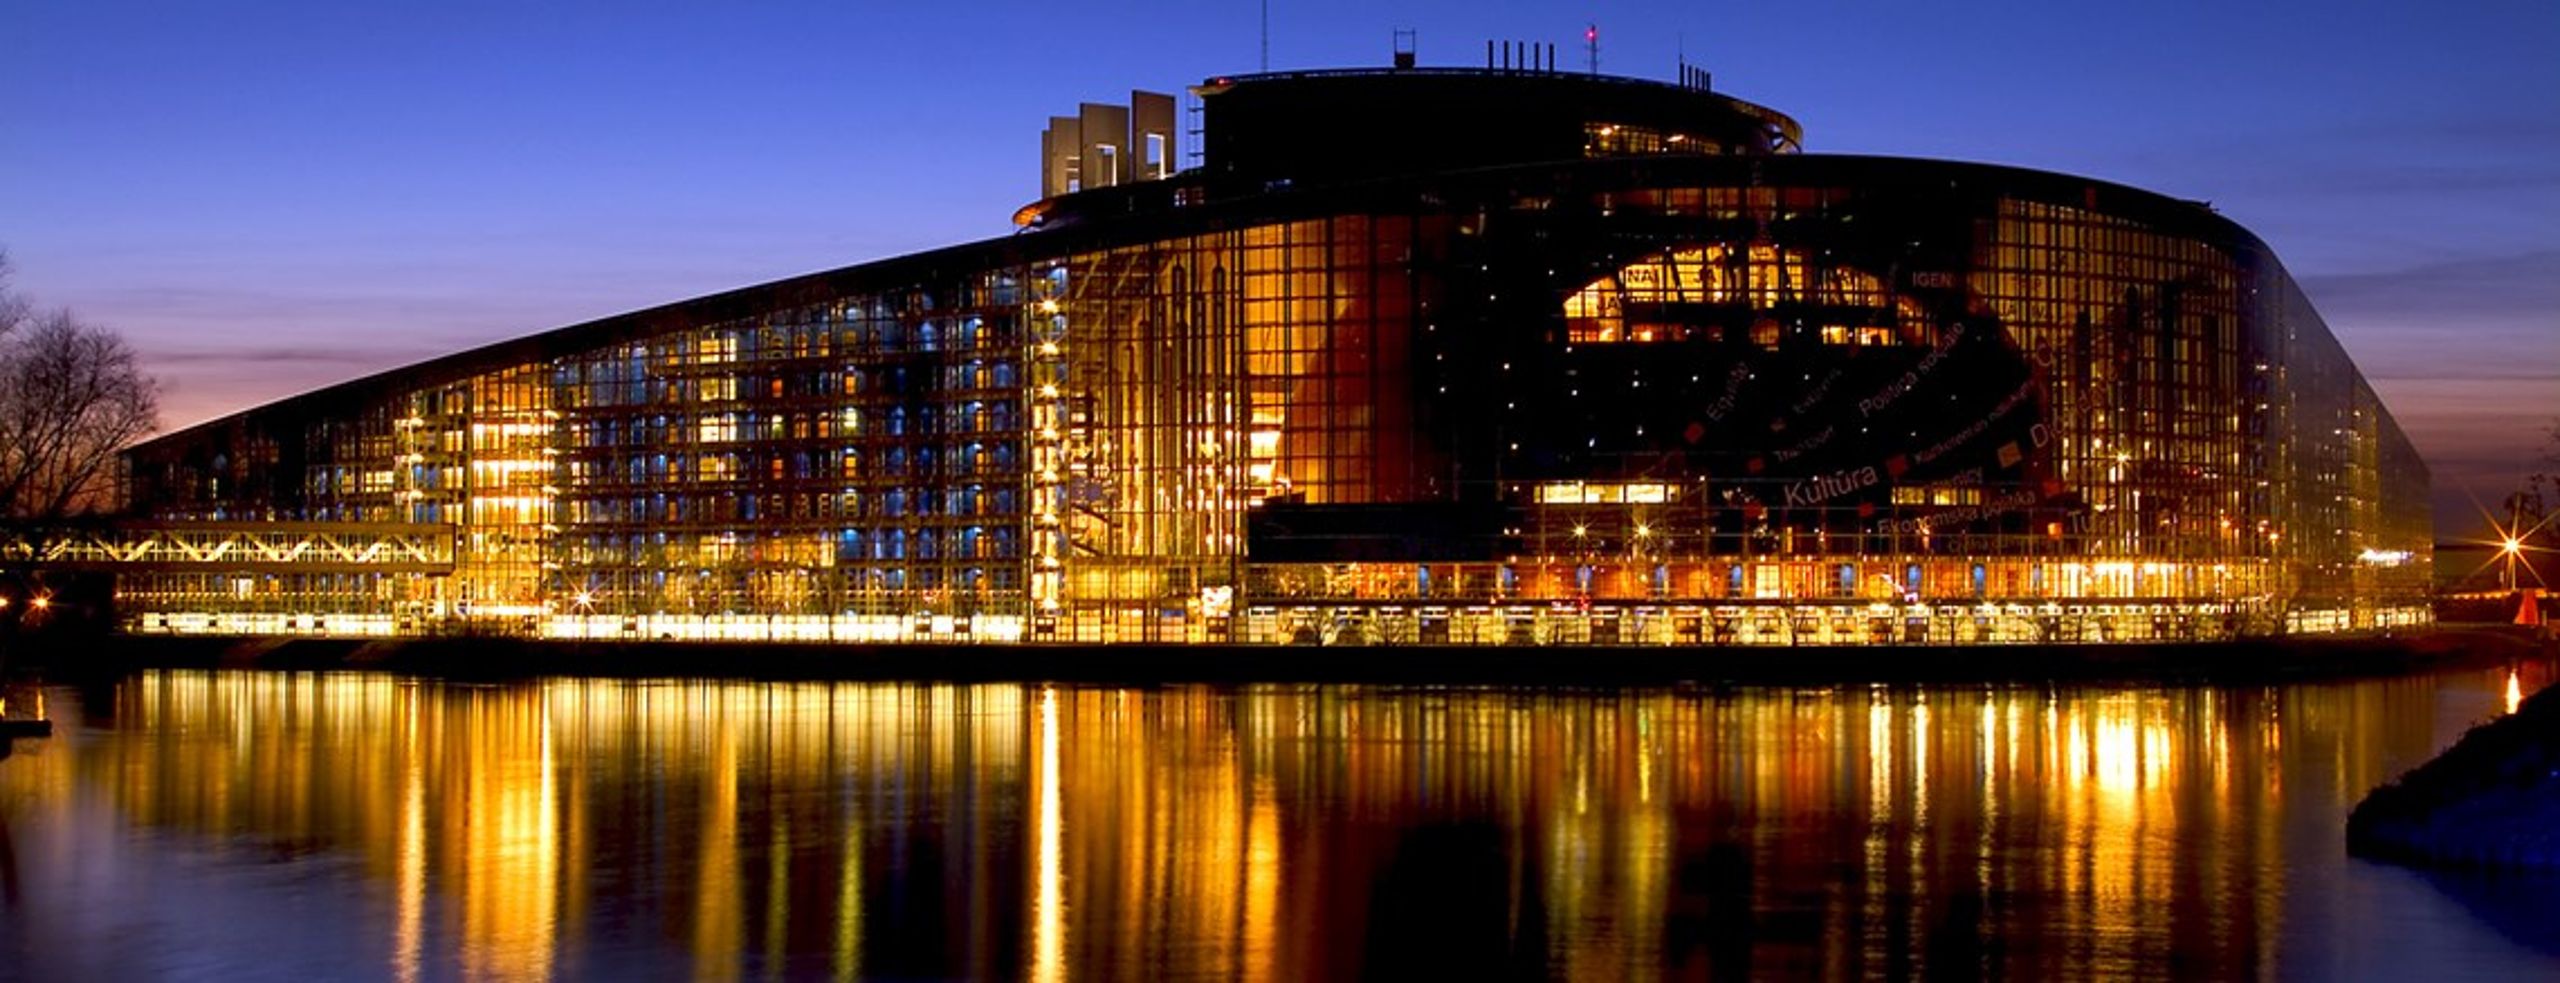 Europa-Parlamentets hovedbygning i Strasbourg&nbsp;set fra sø-siden.&nbsp;.&nbsp;